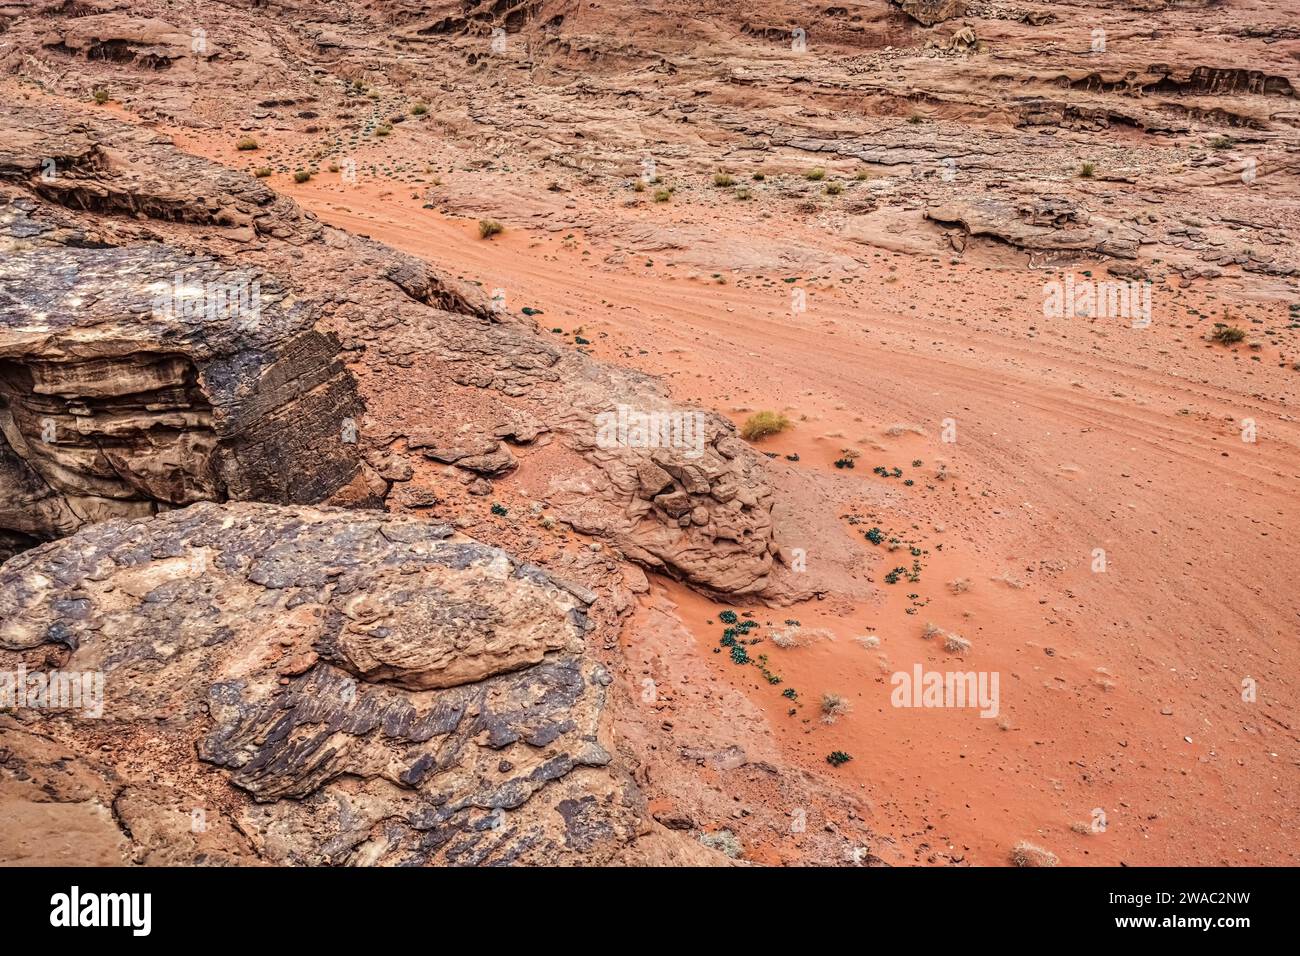 Rot-orange marsähnliche Landschaft in der Wüste Jordan Wadi Rum. Dieser Ort wurde für viele Science-Fiction-Filme genutzt Stockfoto